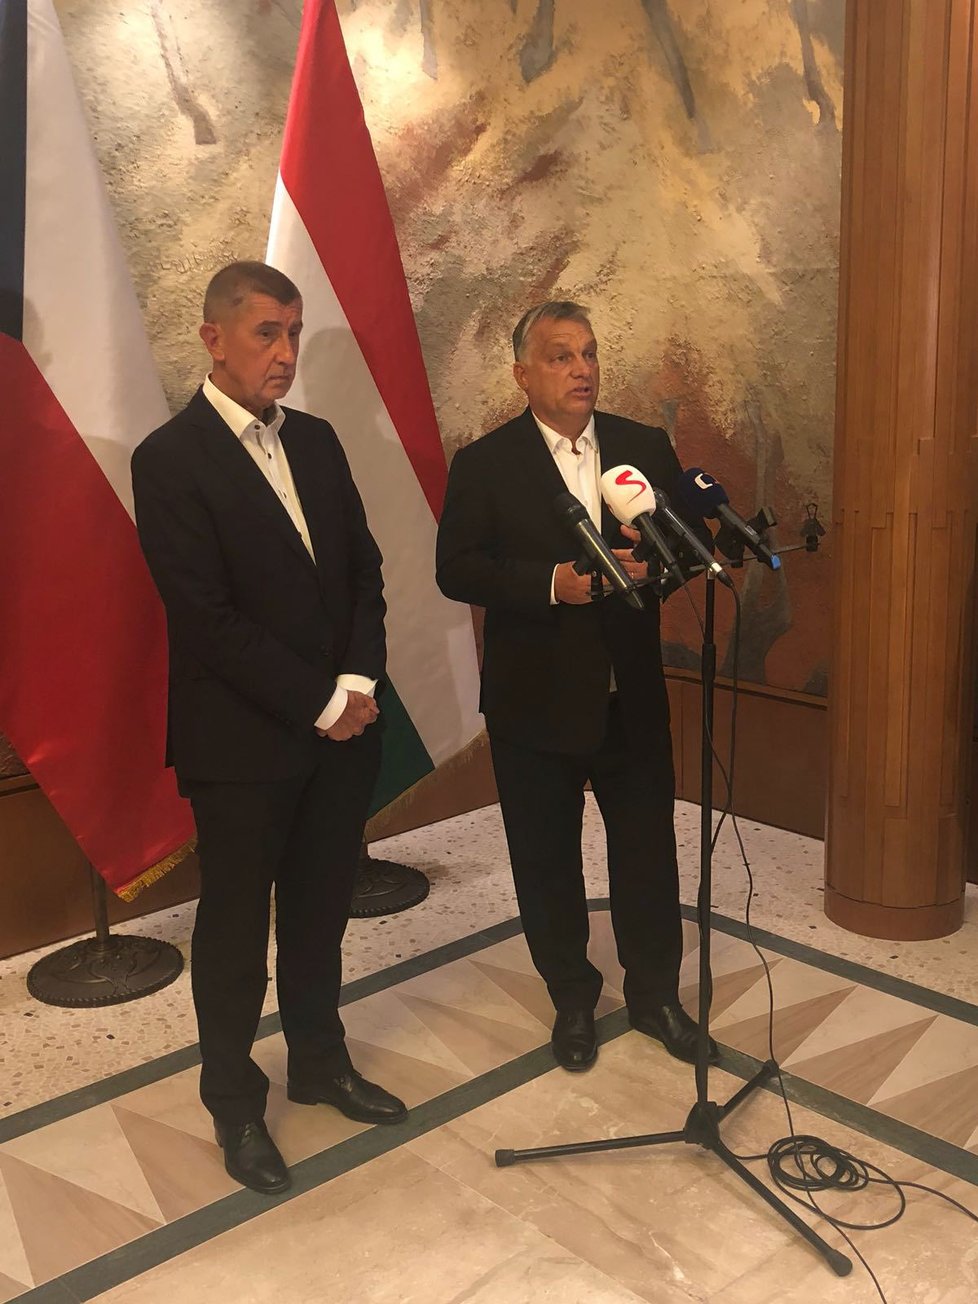 Babiš i Orbán se chtějí před zářijovým neformálním summitem EU potkat i s ostatními zástupci V4